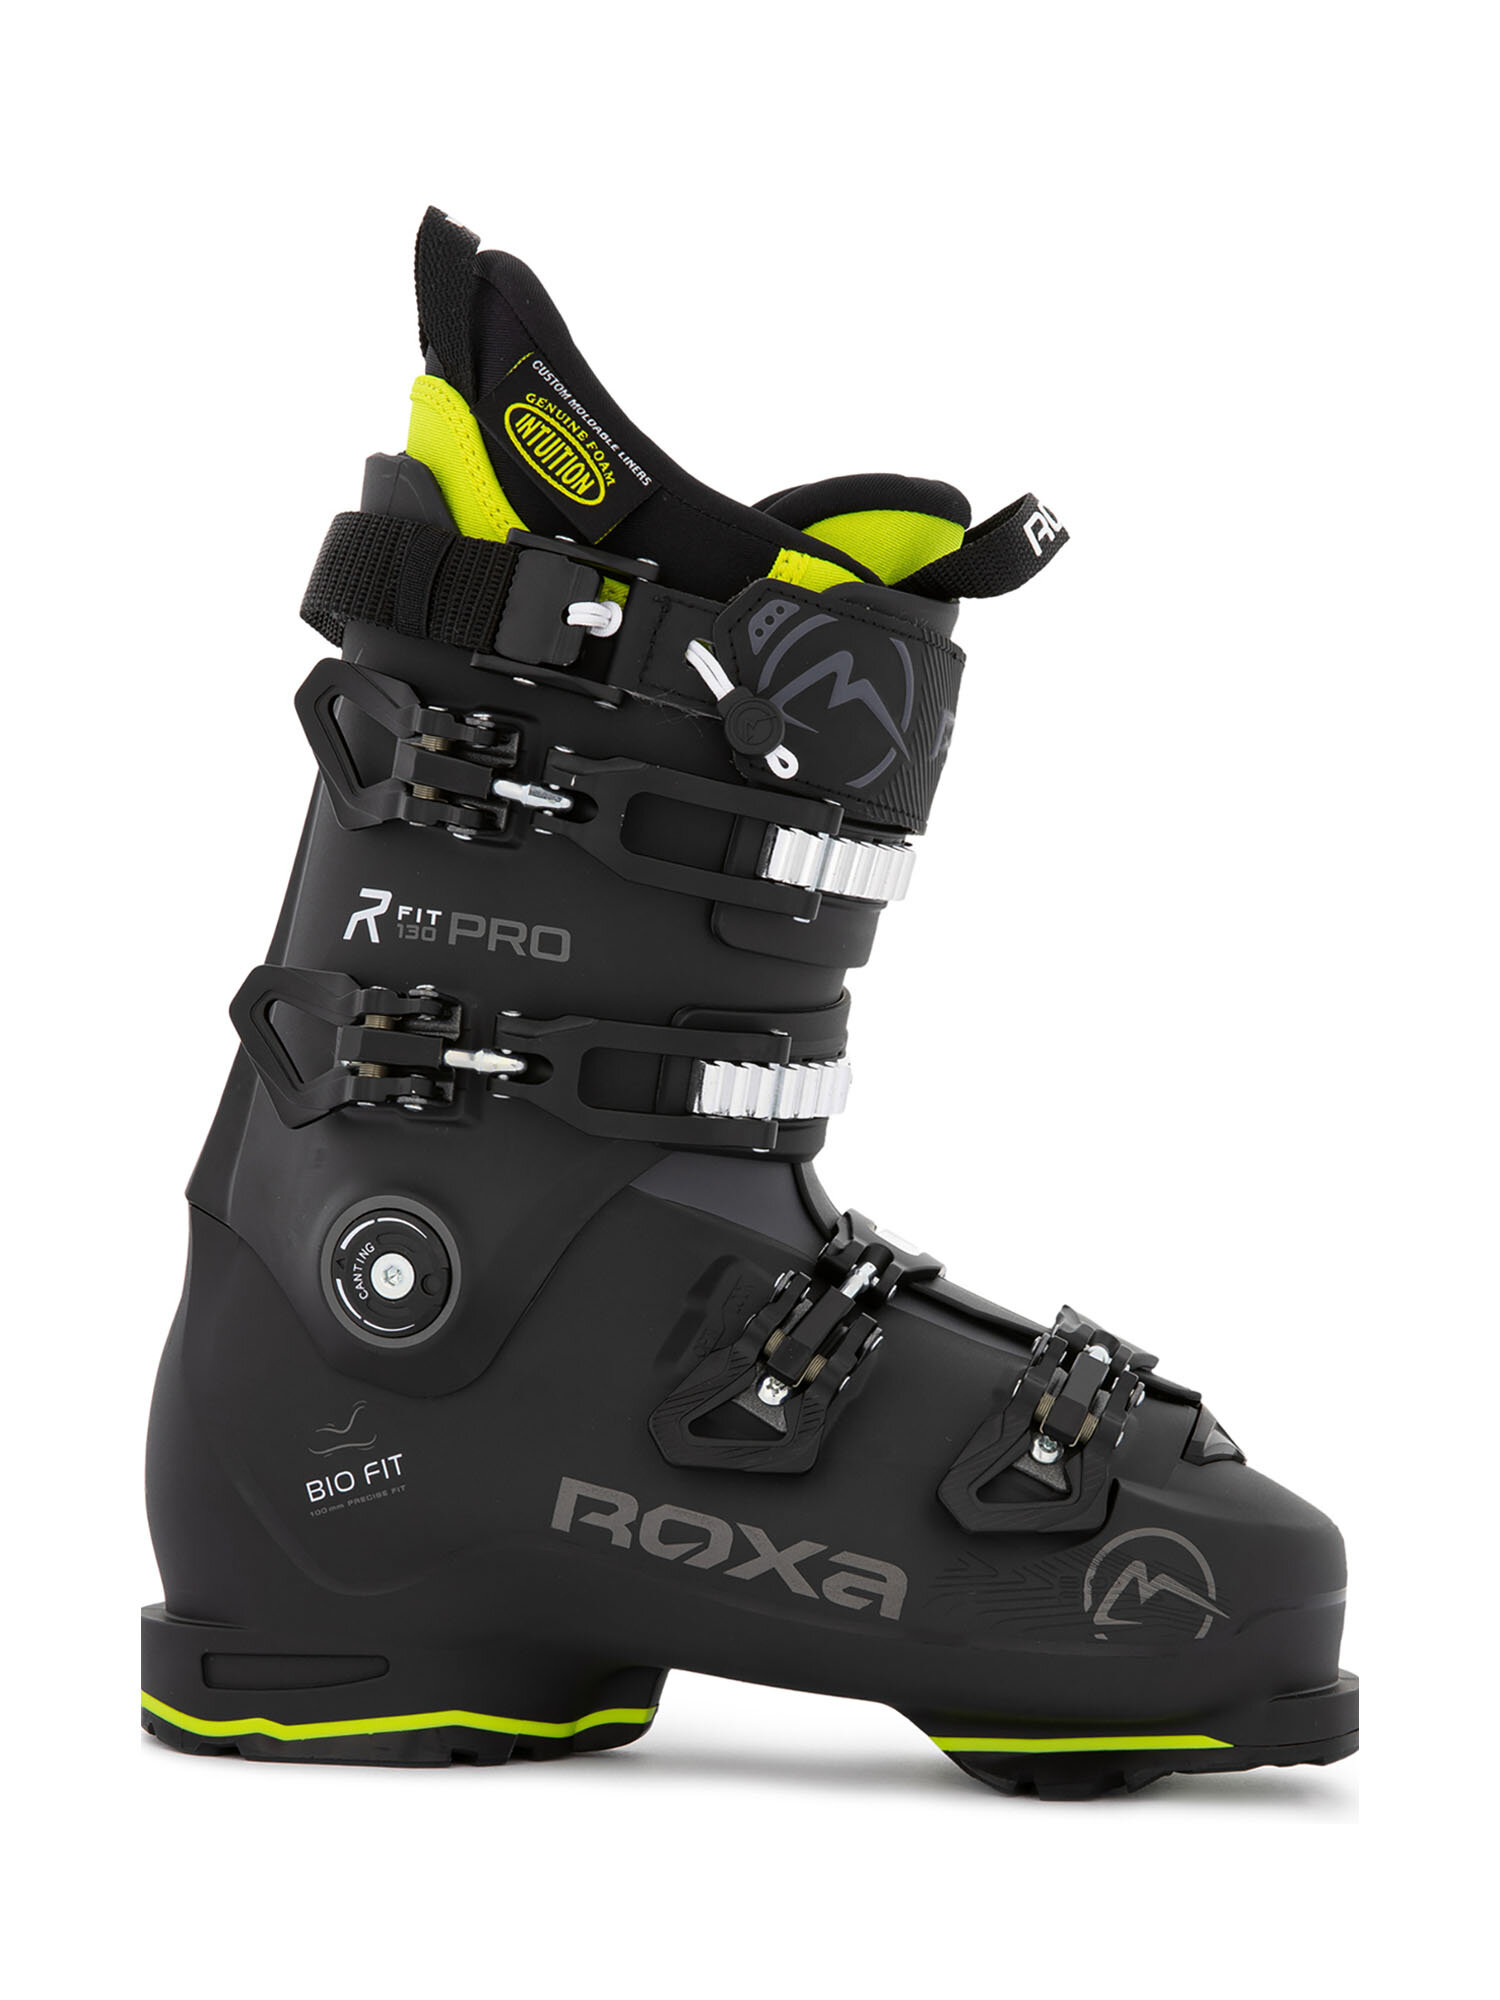 Горнолыжные ботинки ROXA Rfit Pro 130 I.R. Gw Black/Anthracite (см:24,5)